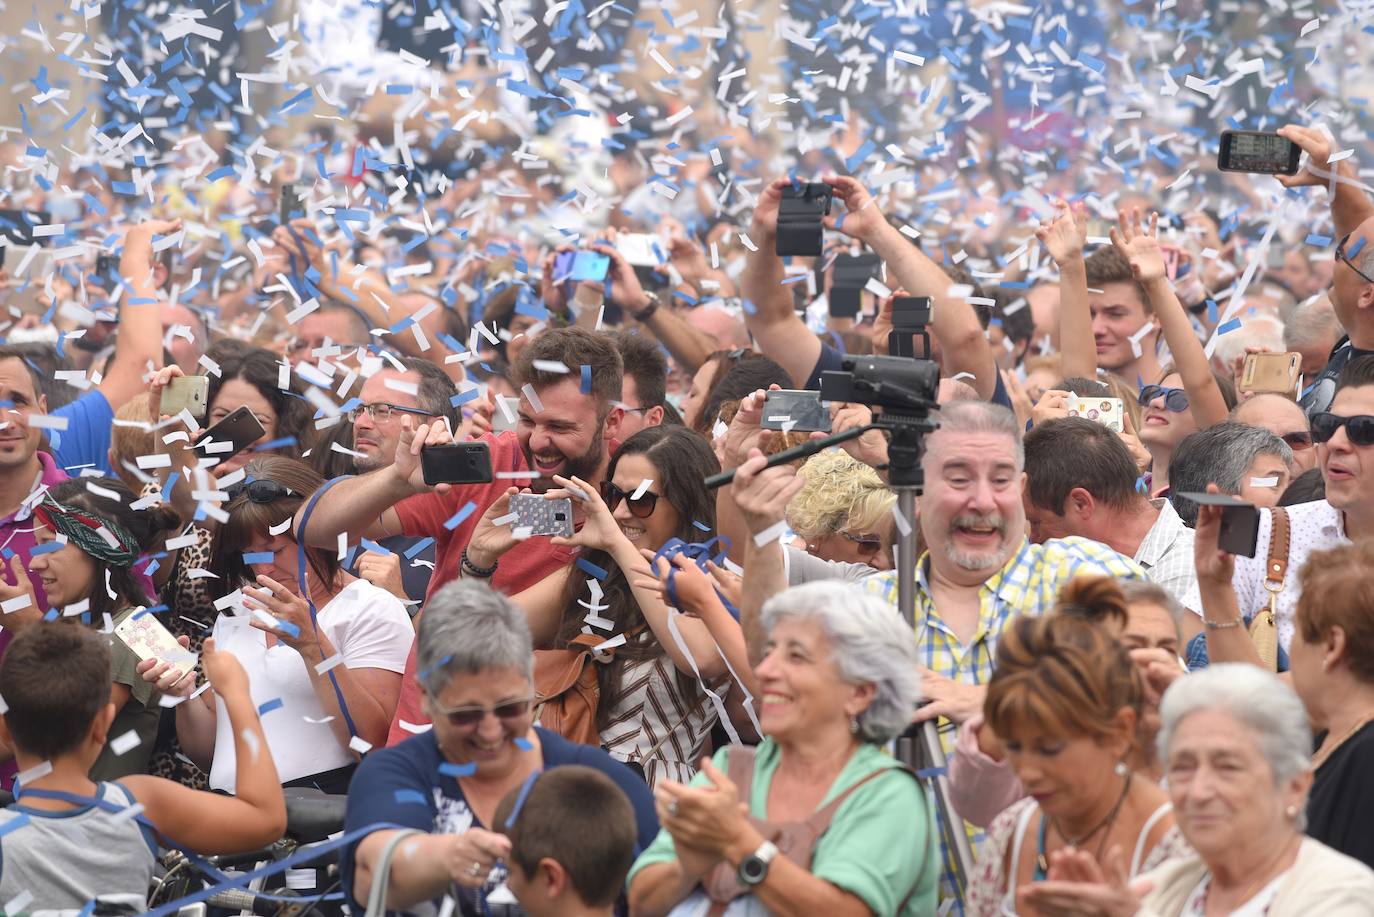 El tiempo respetó y la lluvia no hizo presencia en Donostia durante el inicio festivo de la Semana Grande 2019, lo que permitió que las calles de la ciudad se llenaran de donostiarras y visitantes para disfrutar del Cañonazo y del programa de actividades.